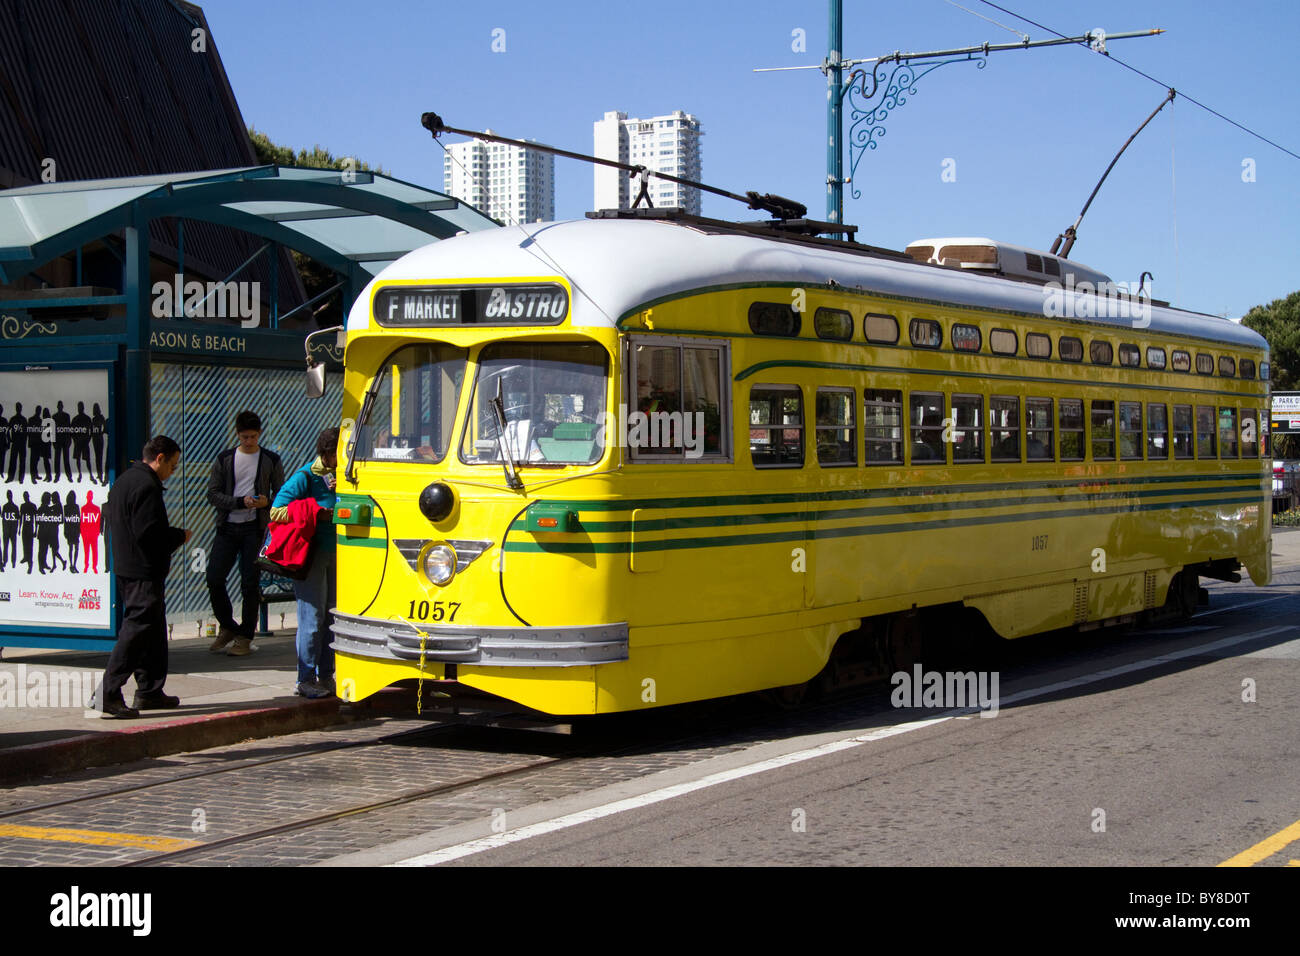 Transports publics tramway rétro à San Francisco, Californie, USA. Banque D'Images